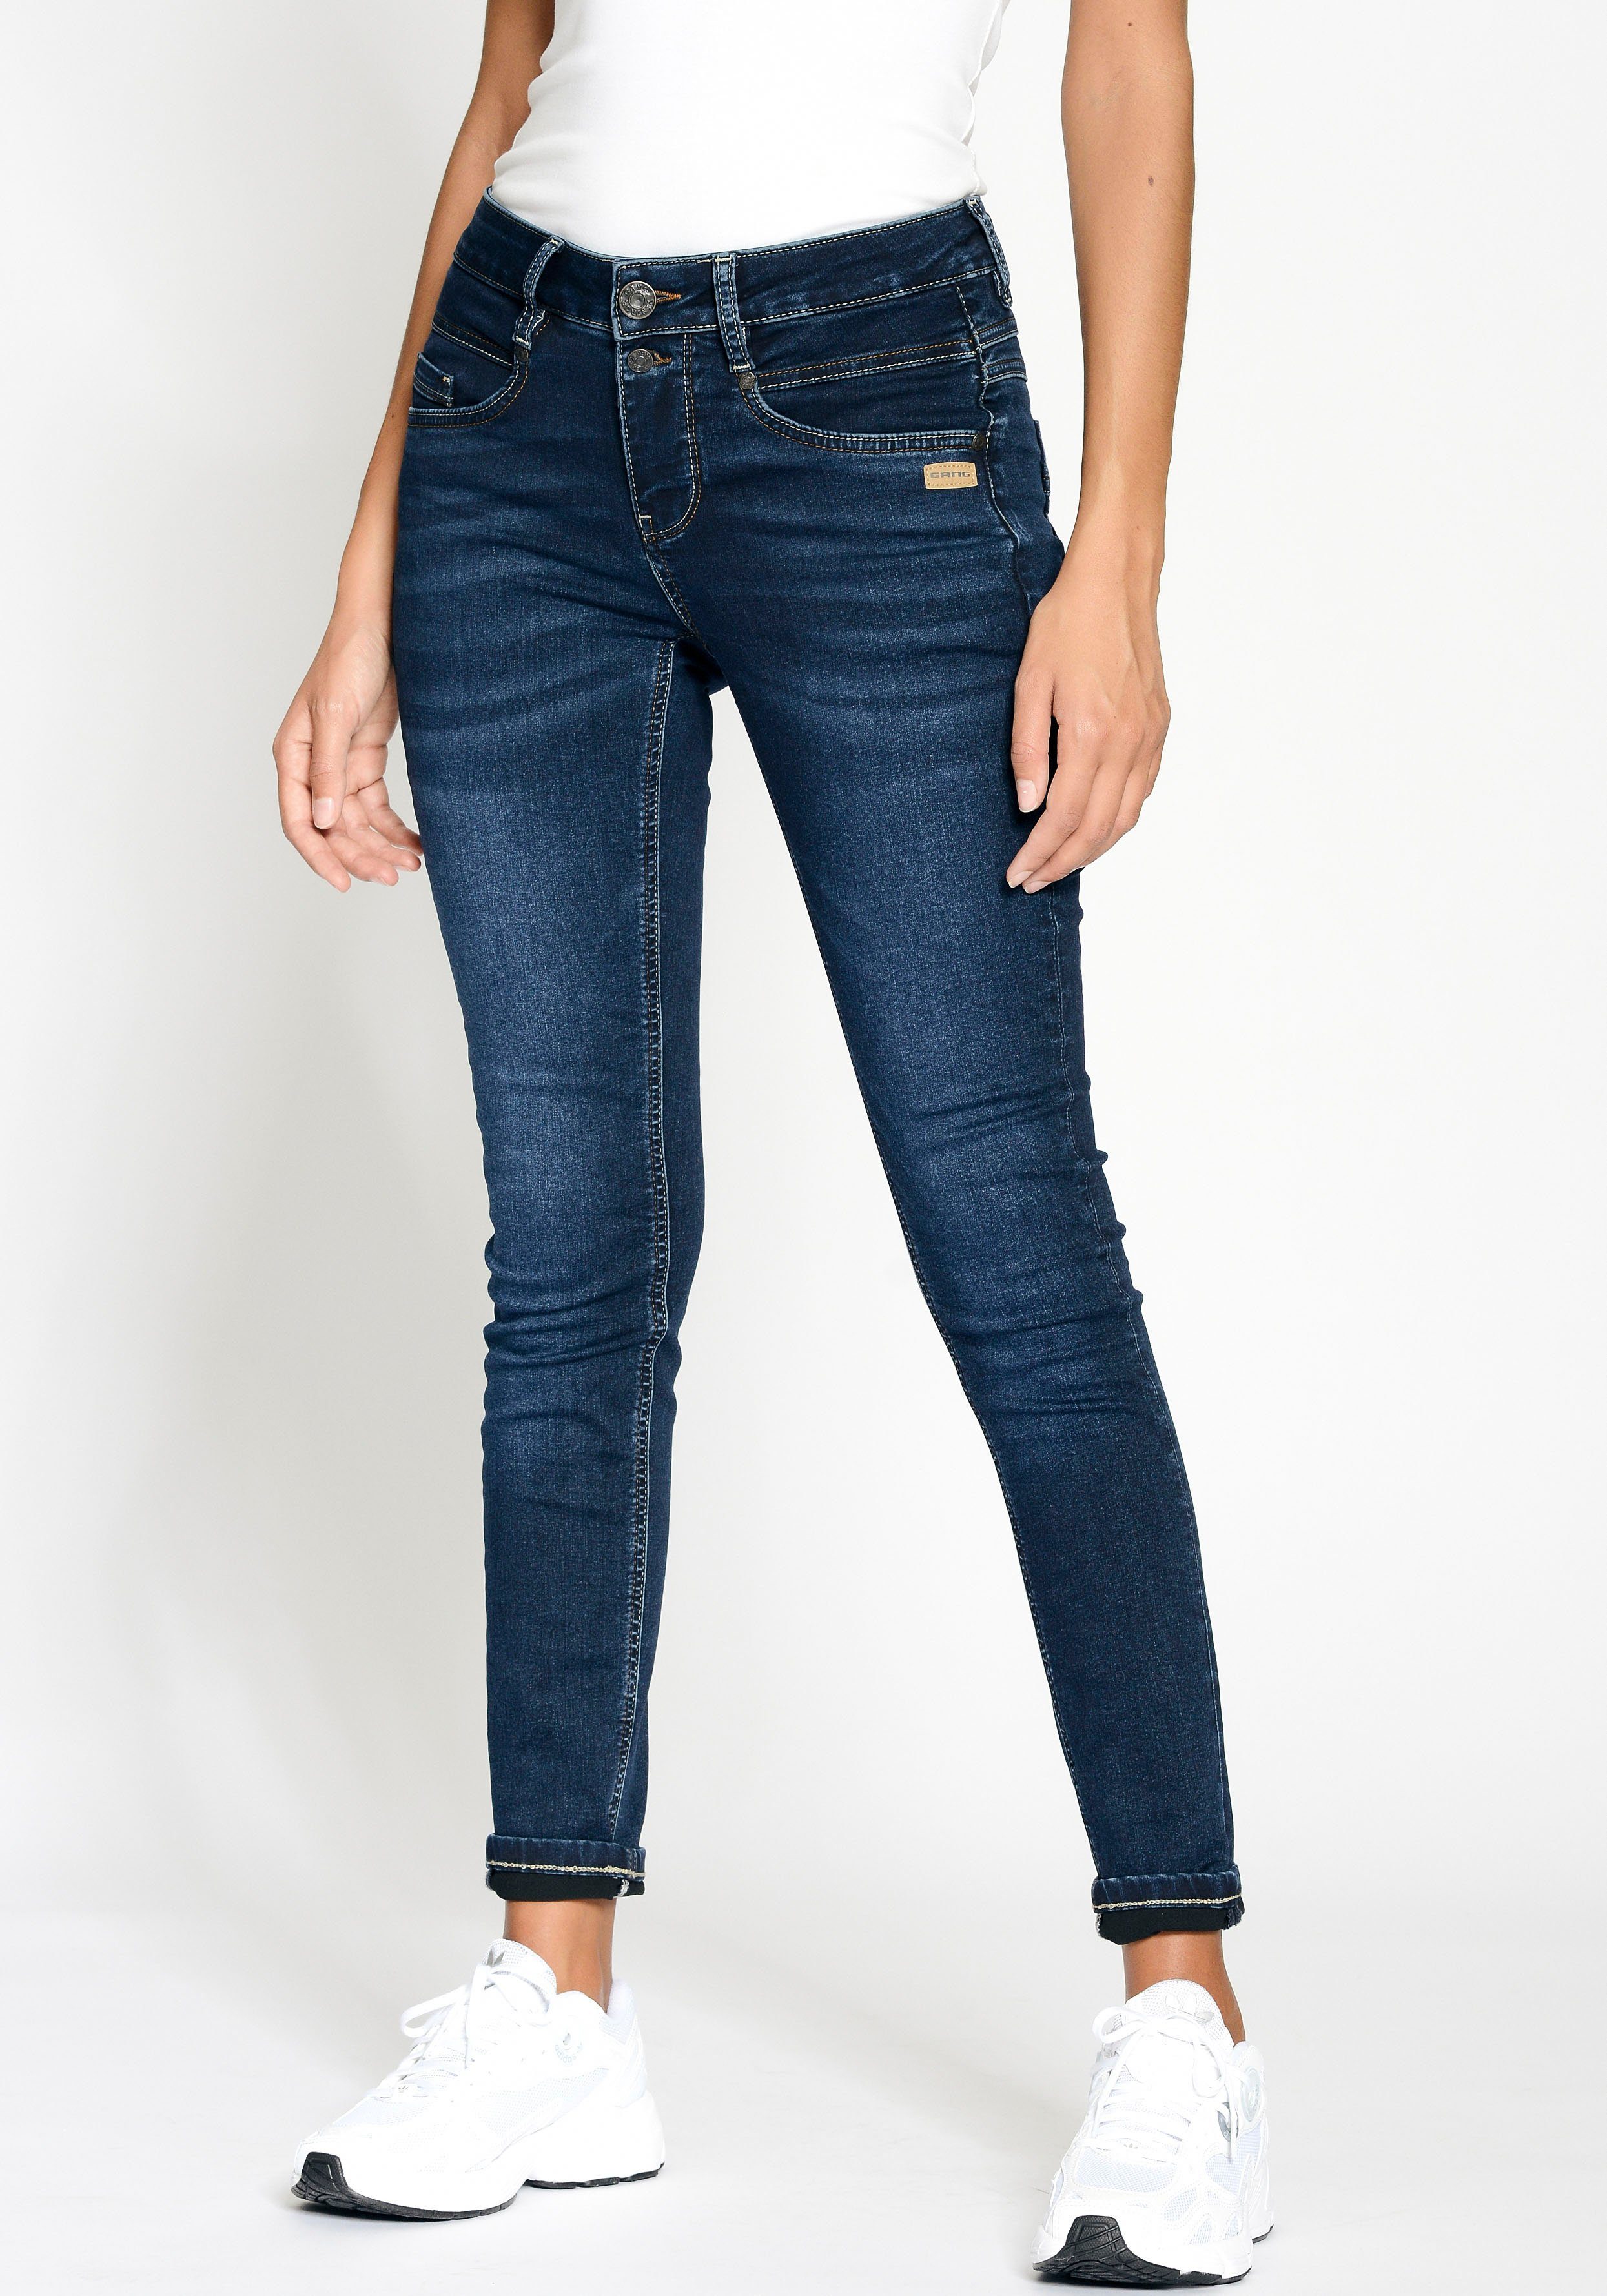 GANG Skinny-fit-Jeans 94MORA mit 3-Knopf-Verschluss und Passe vorne deep dark blue | Stretchjeans